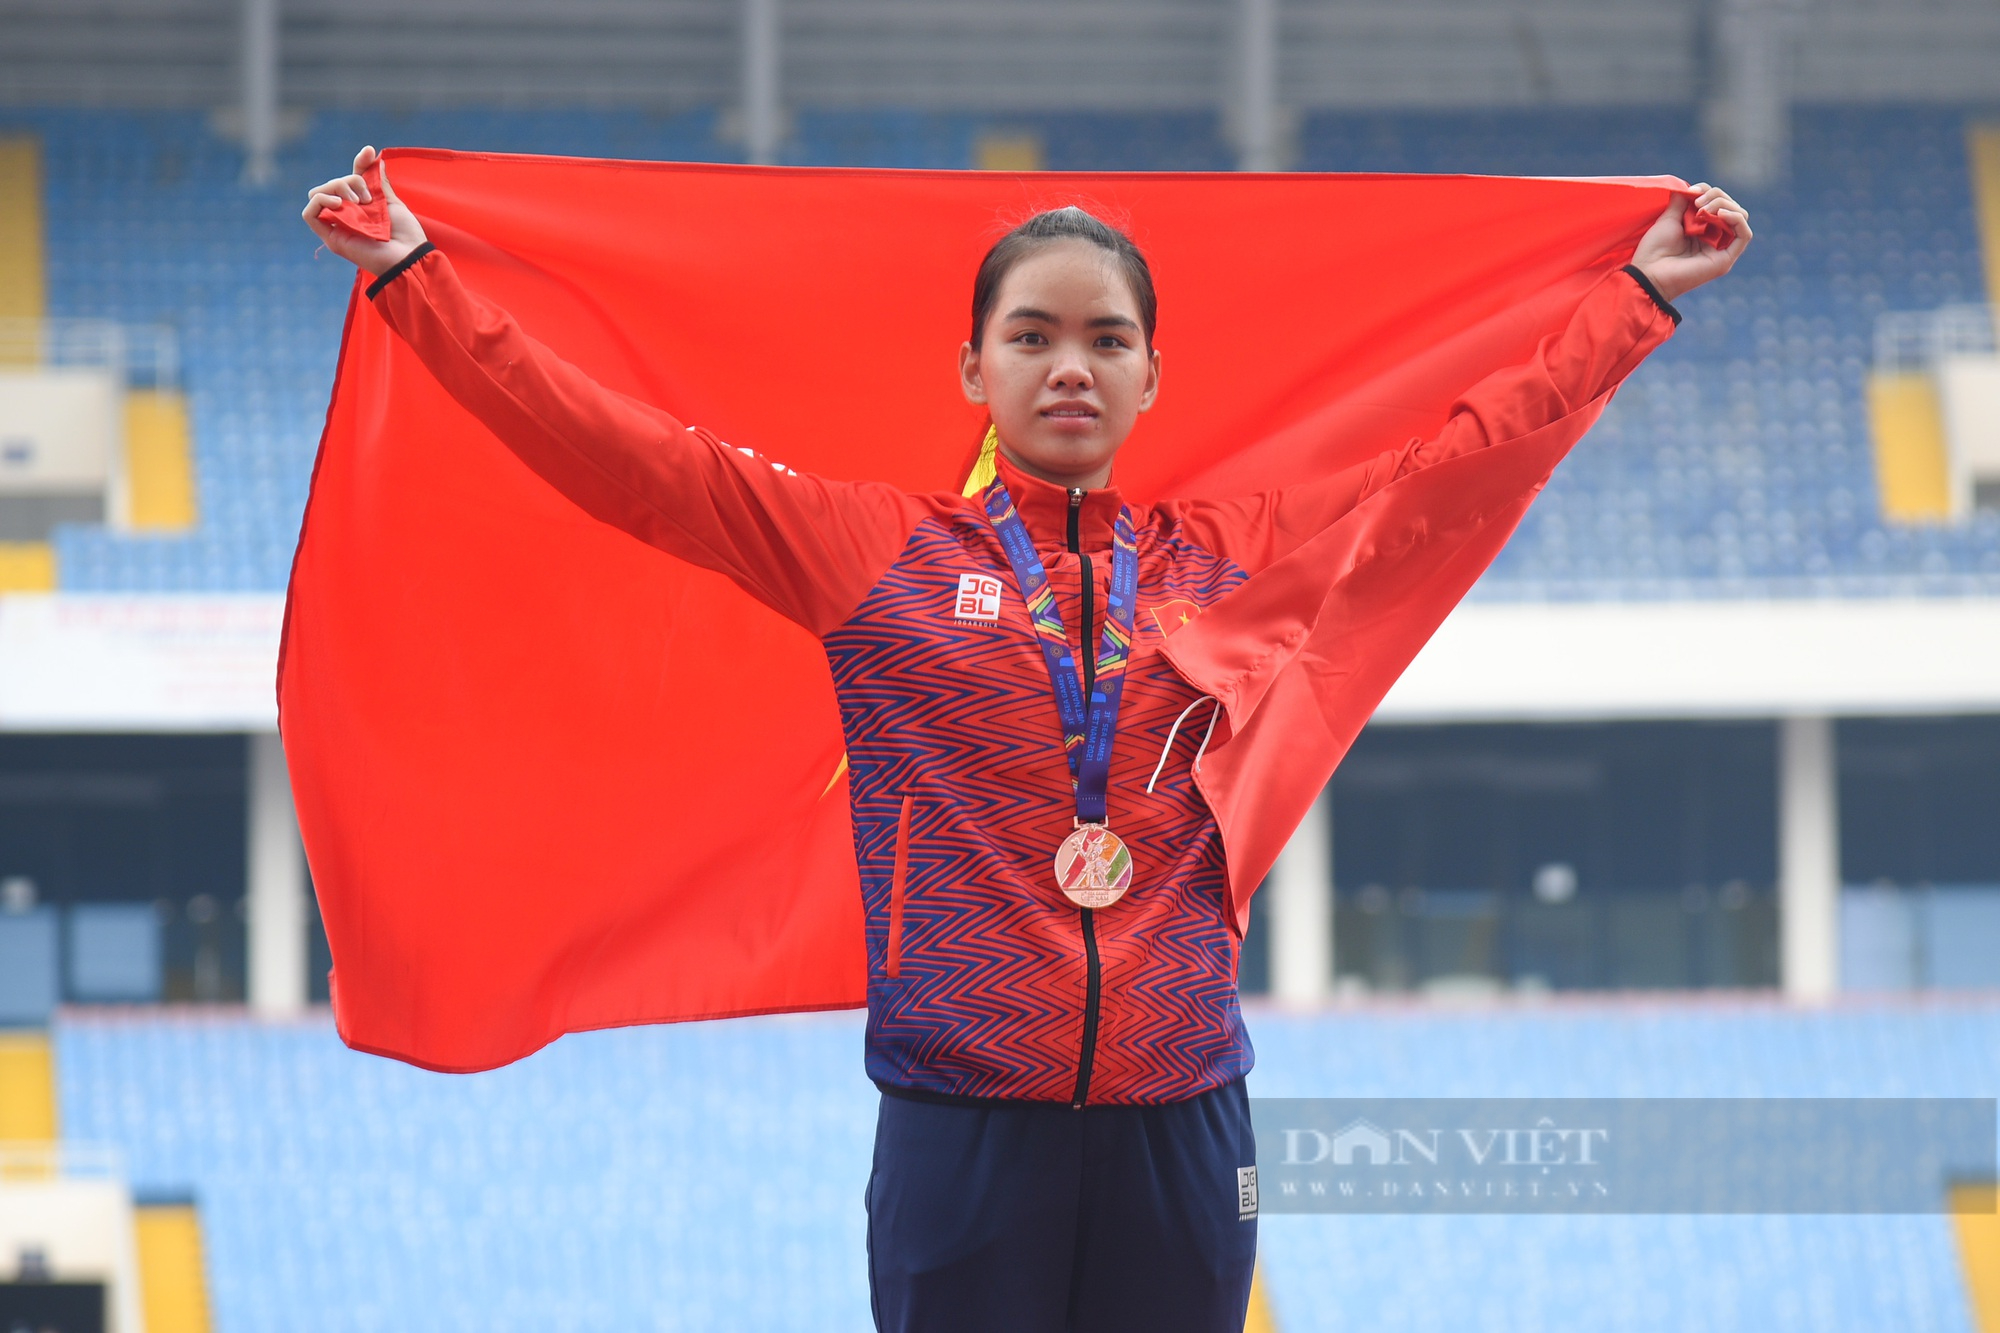 Hoàng Nguyên Thanh giành tấm HCV lịch sử cho marathon Việt Nam sau khi vượt qua 42,195km - Ảnh 9.